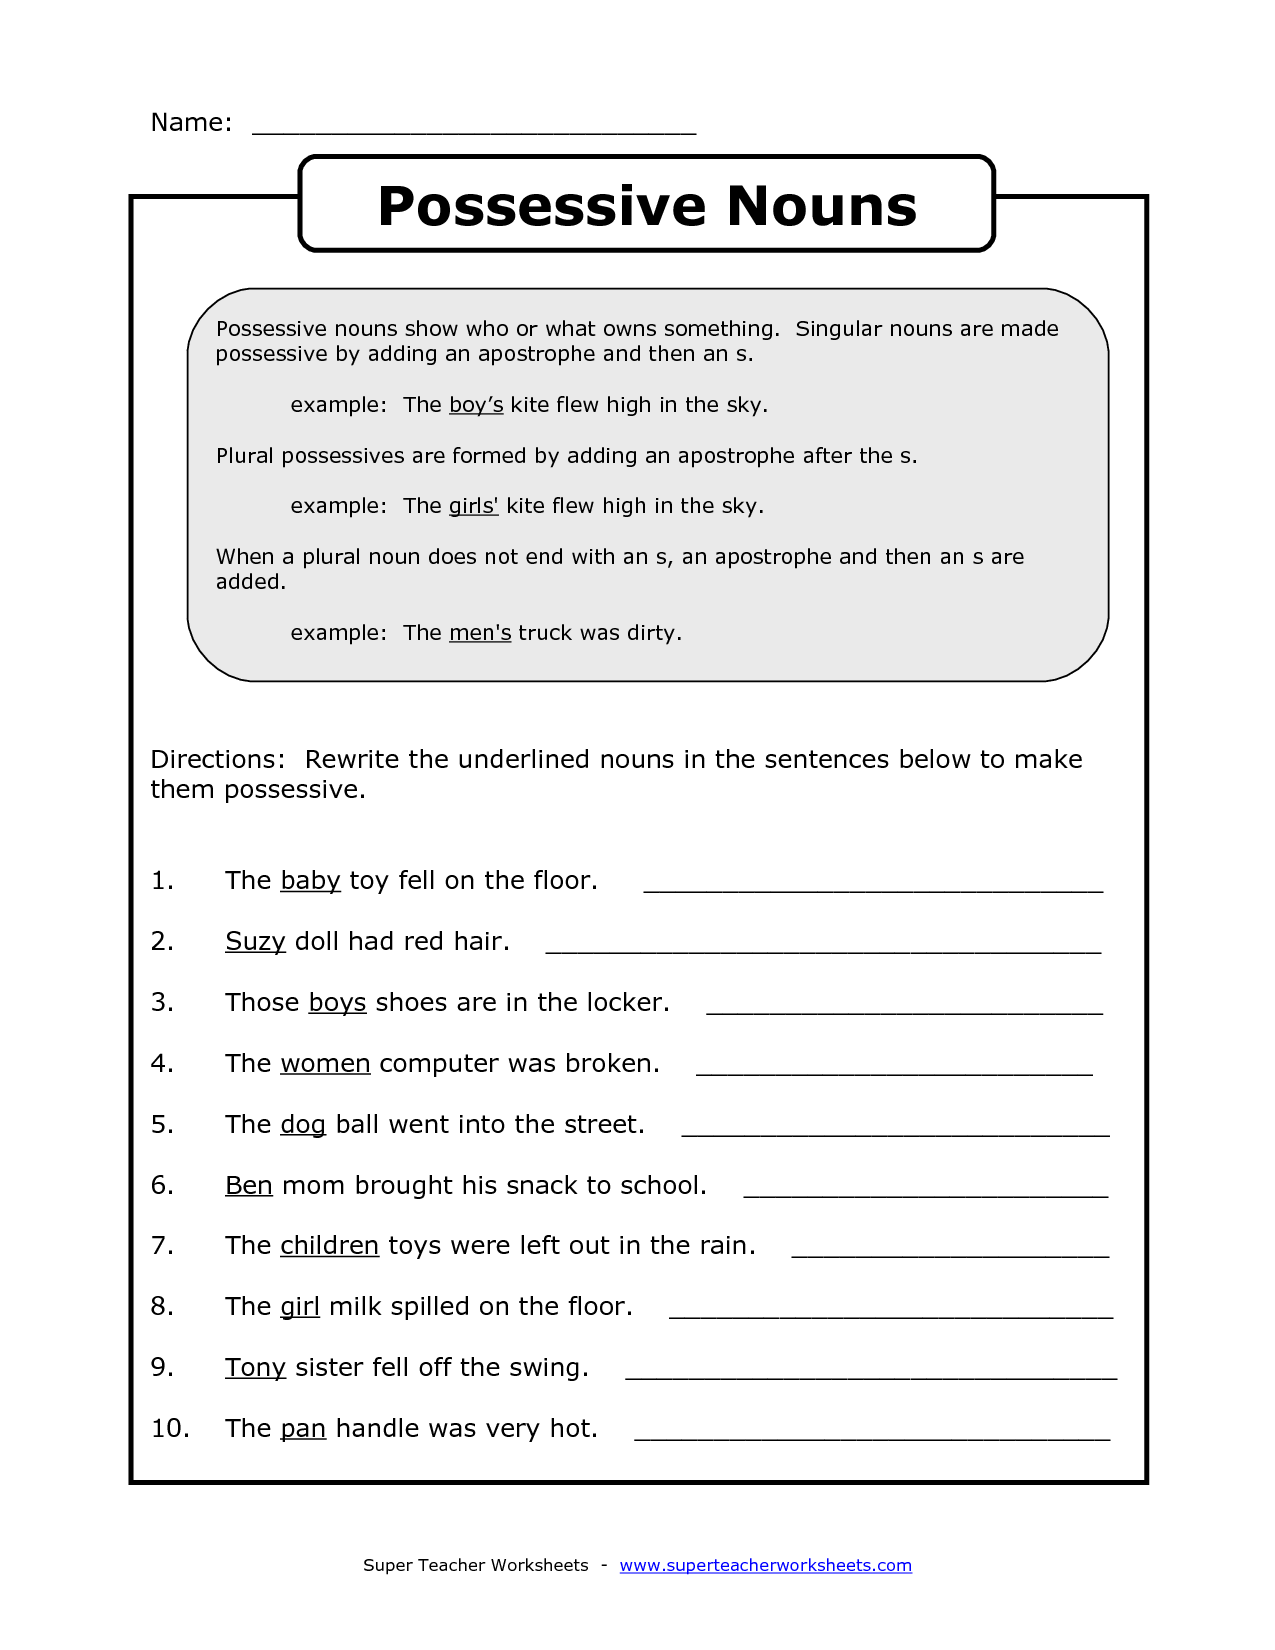 4th-grade-singular-possessive-nouns-worksheets-itsme-winchelle